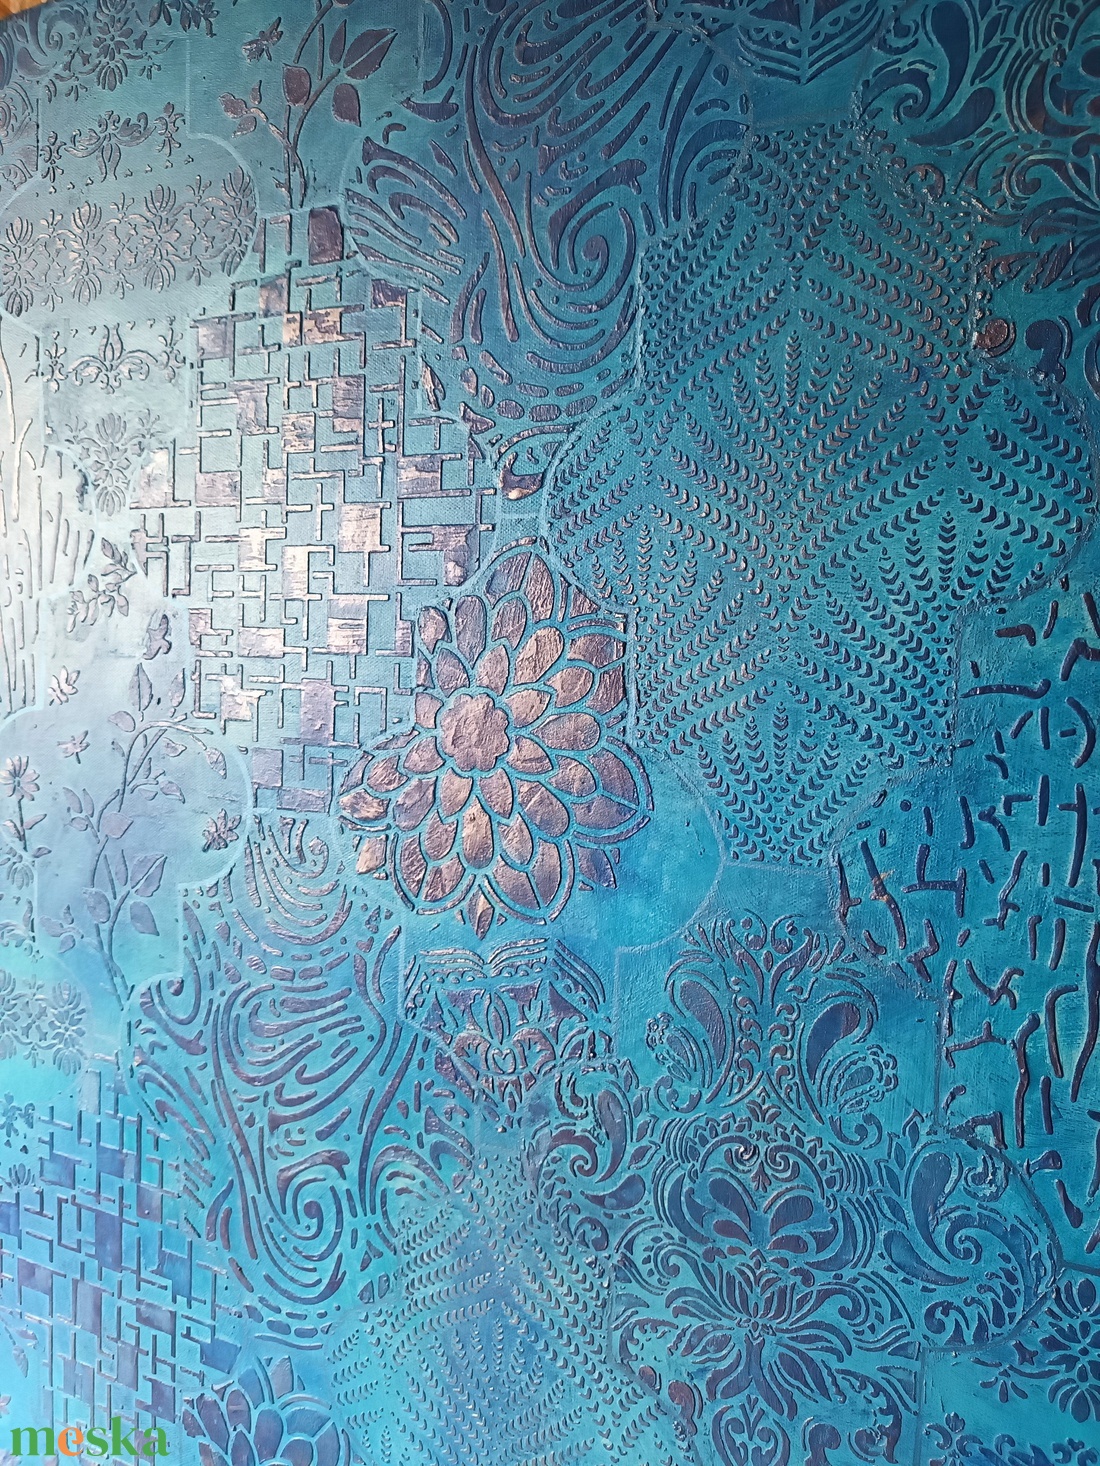 Strukturált festmény - kék marokkói - otthon & lakás - dekoráció - kép & falikép - vászonkép - Meska.hu